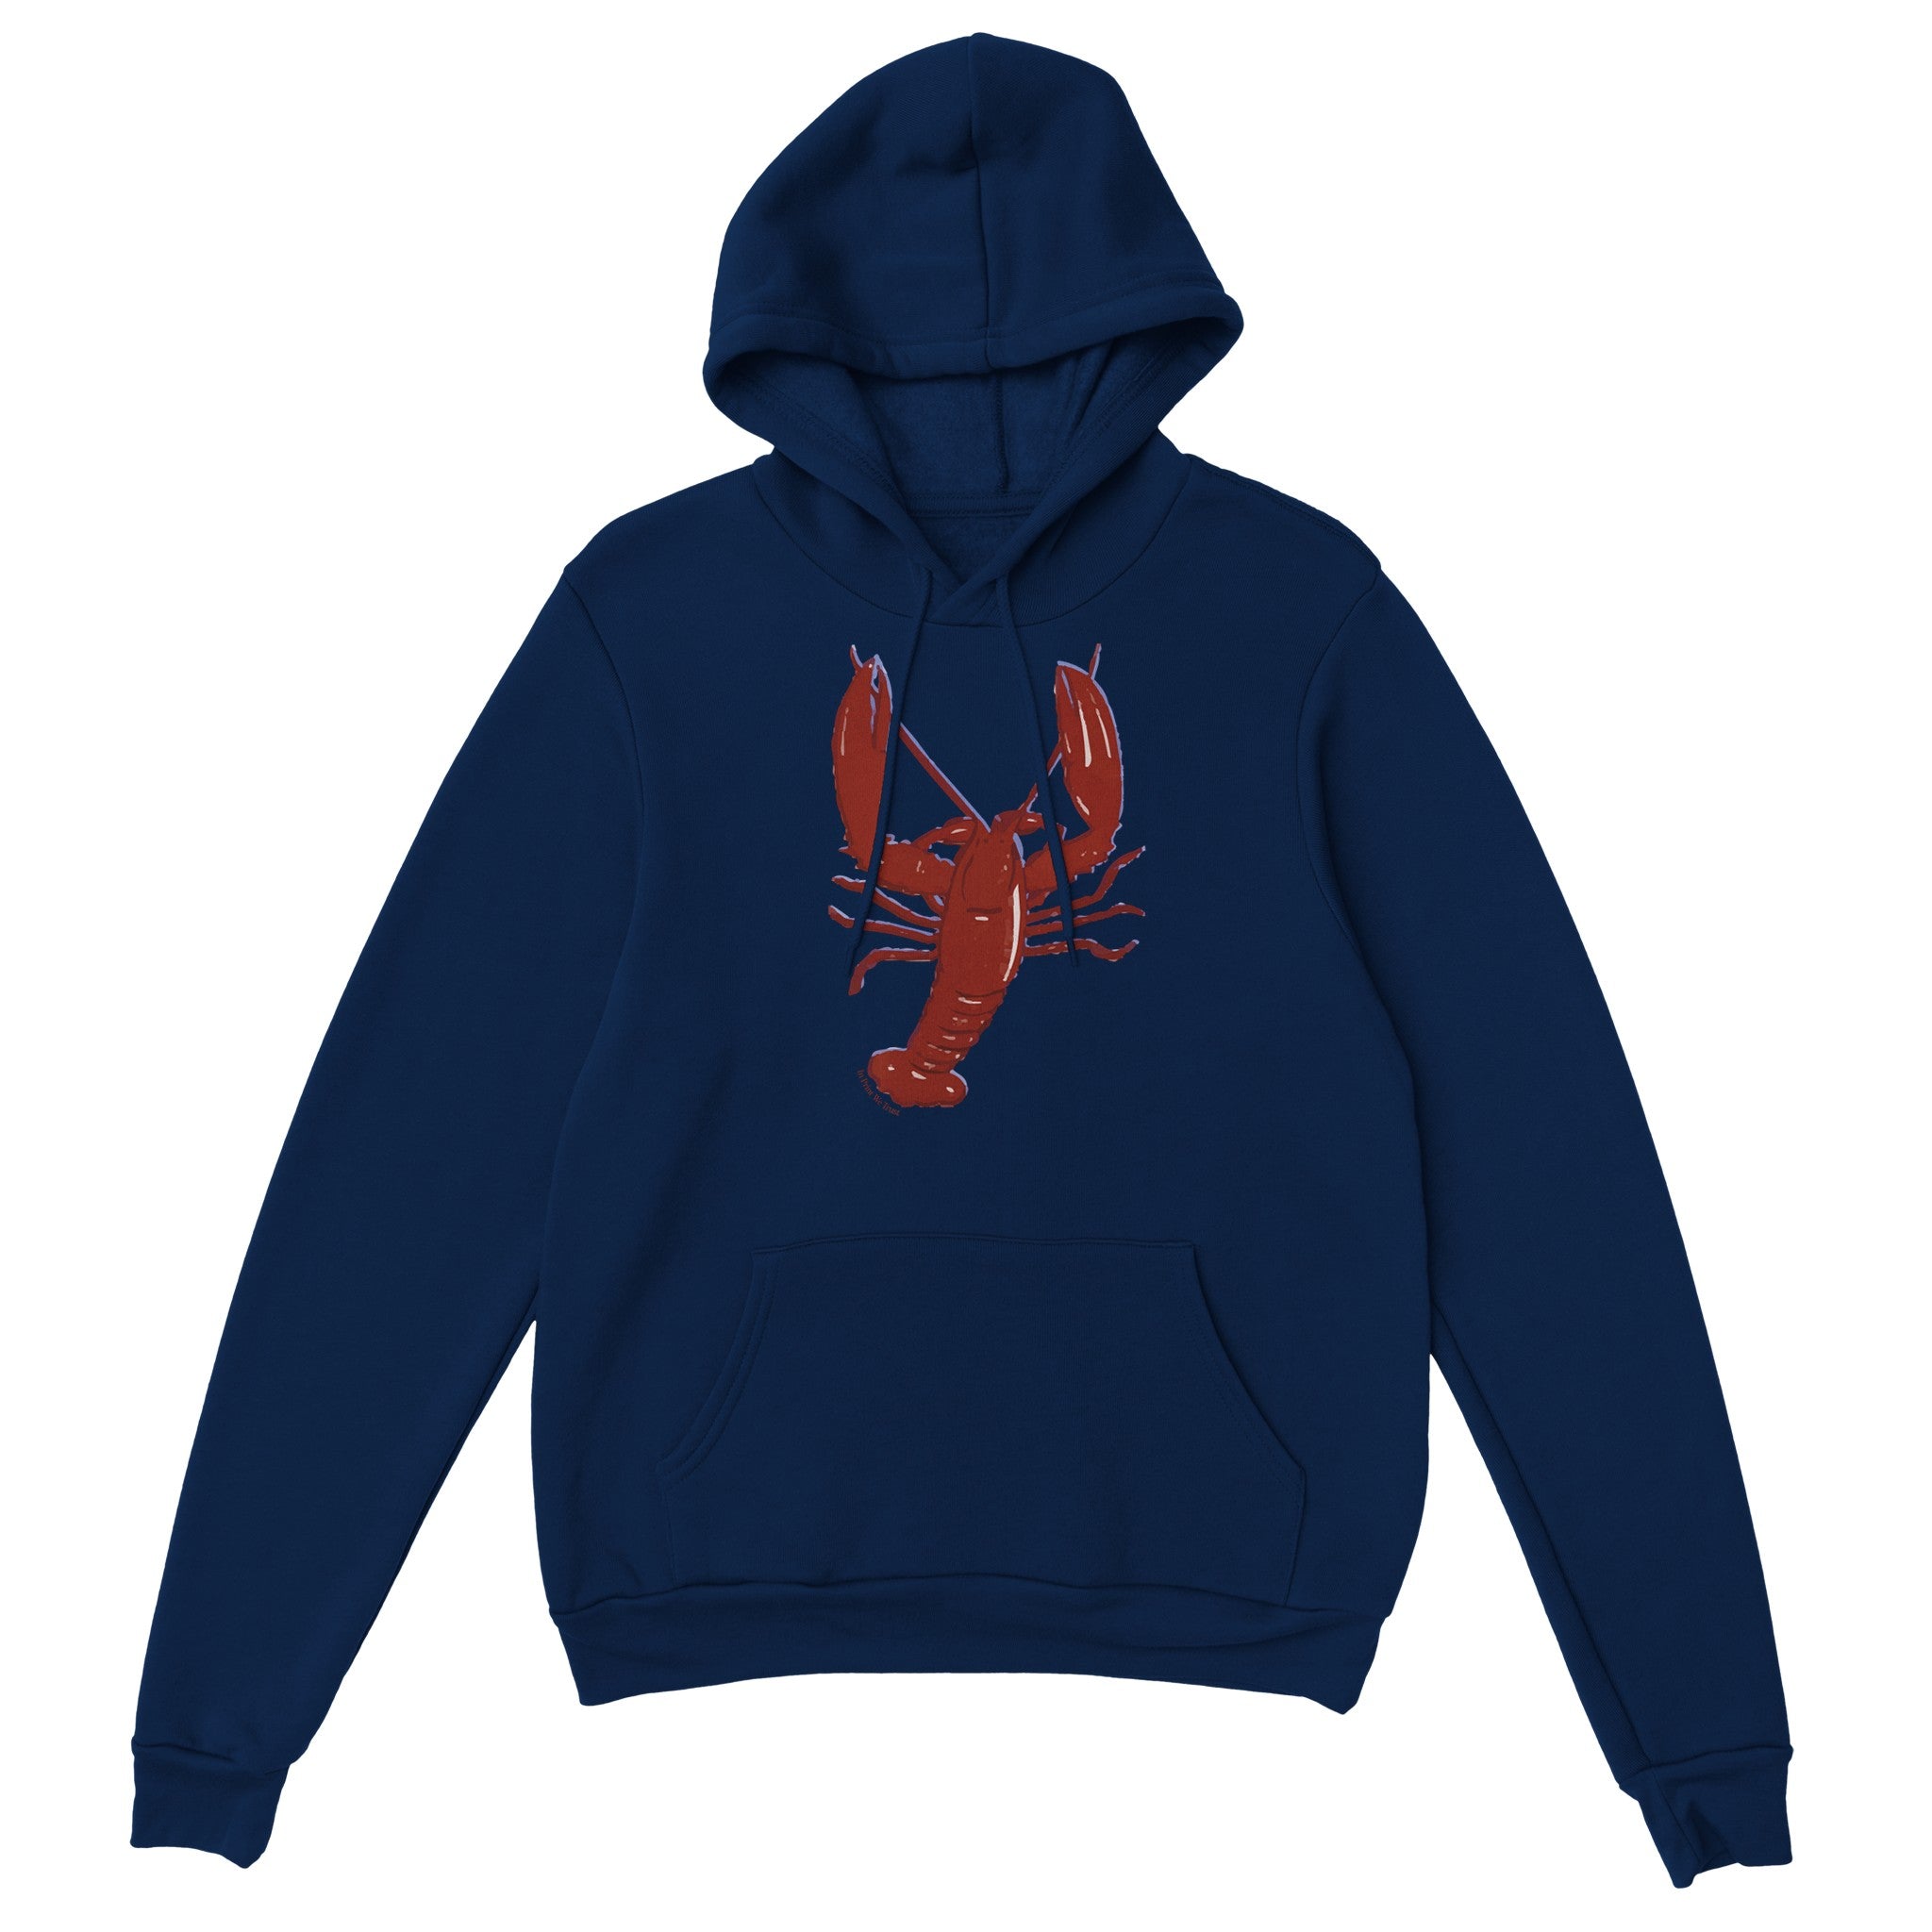 'You're My Lobster' hoodie - In Print We Trust